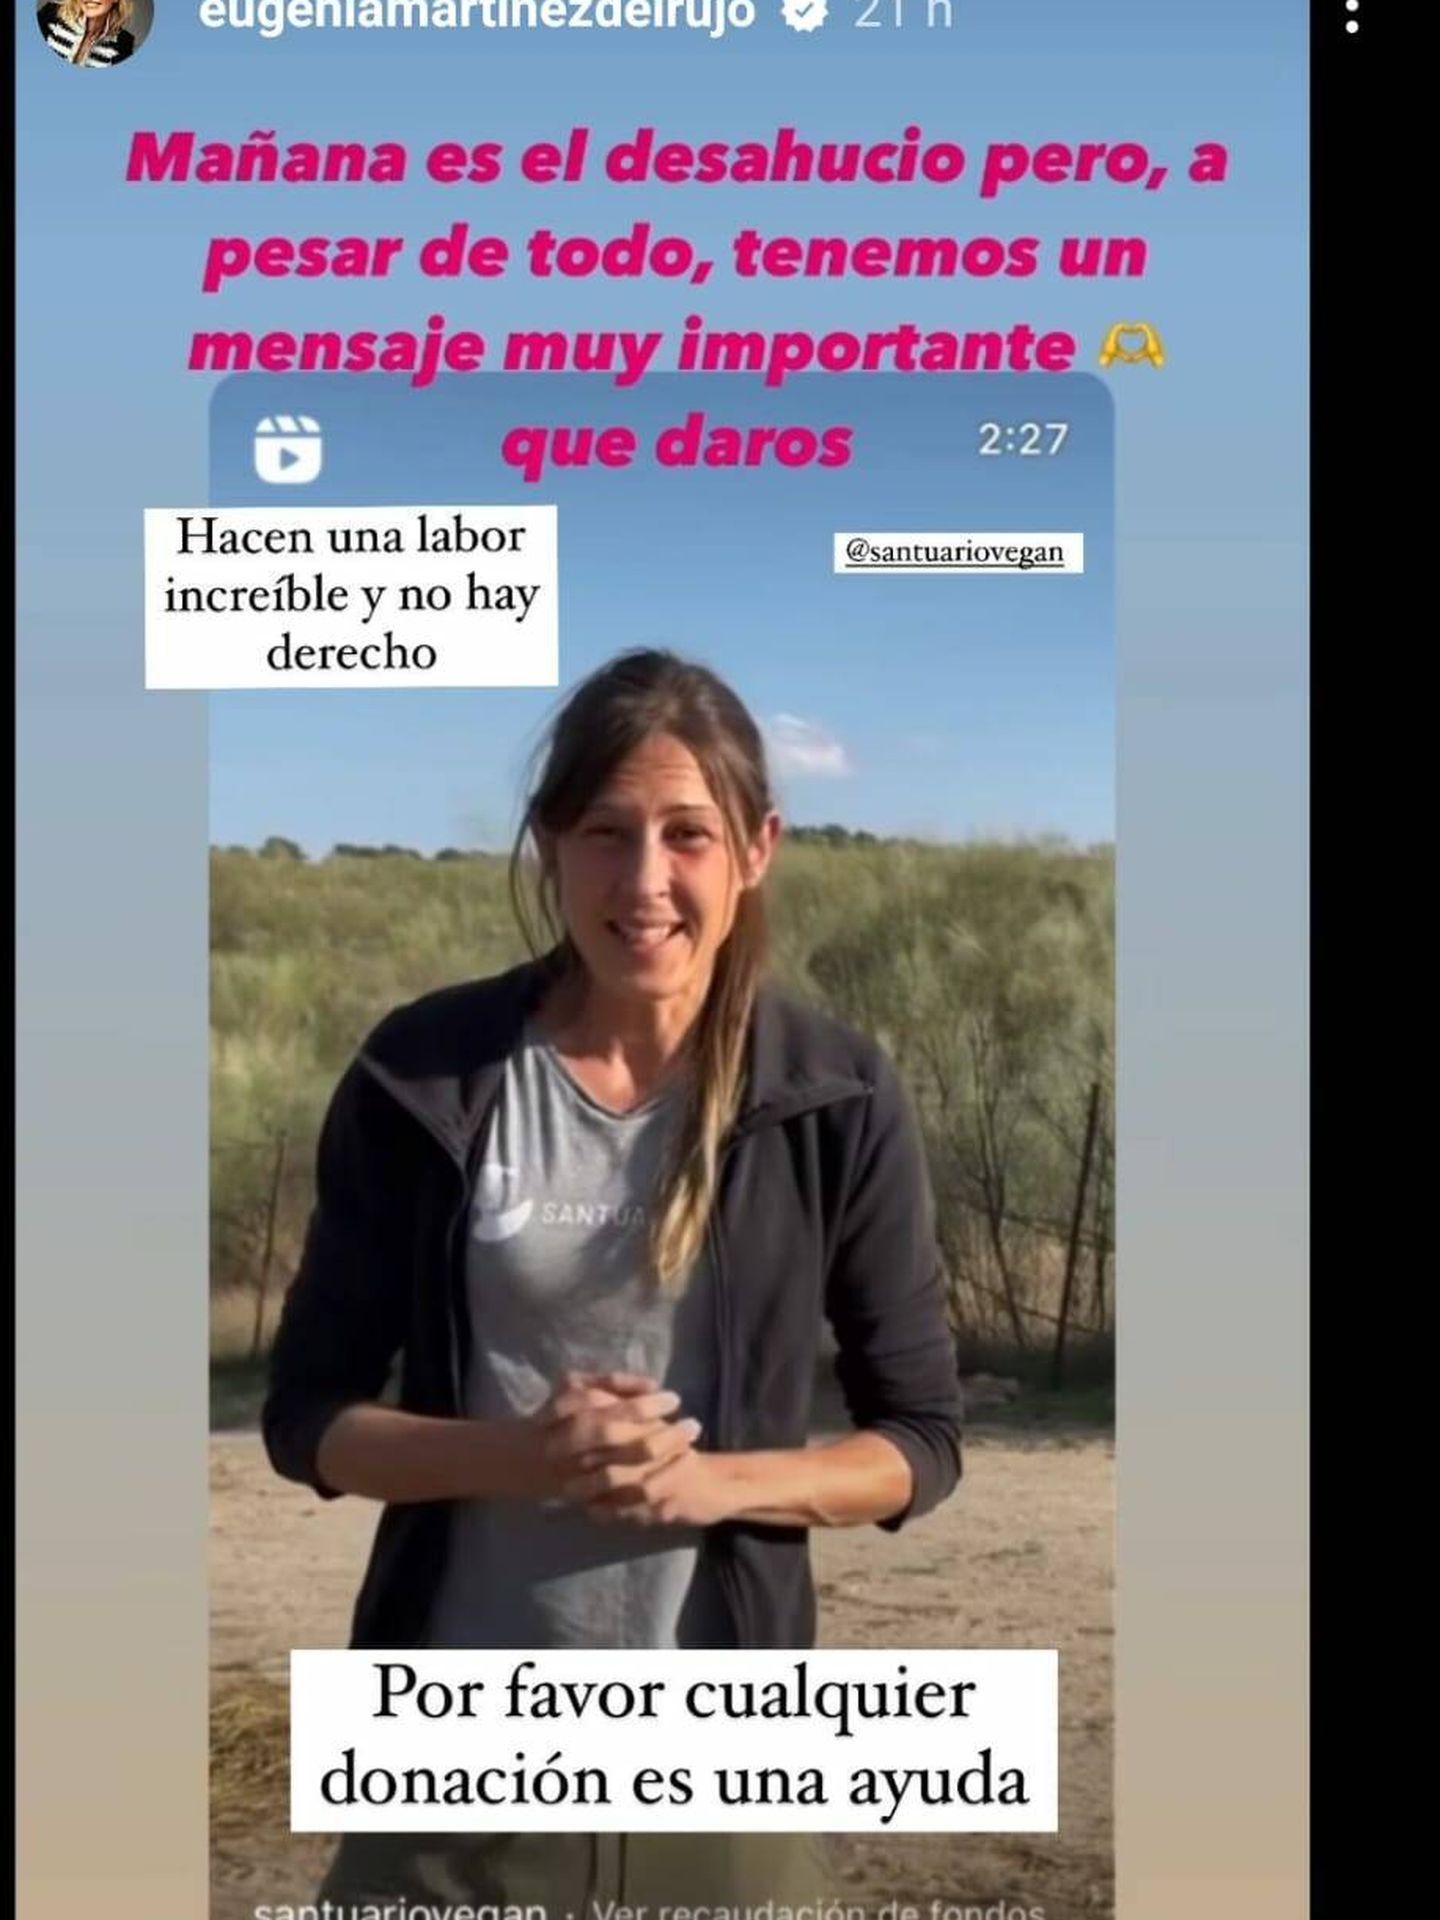 Eugenia Martínez de Irujo en sus redes sociales. (Instagram/@eugeniamartiezdeirujo)